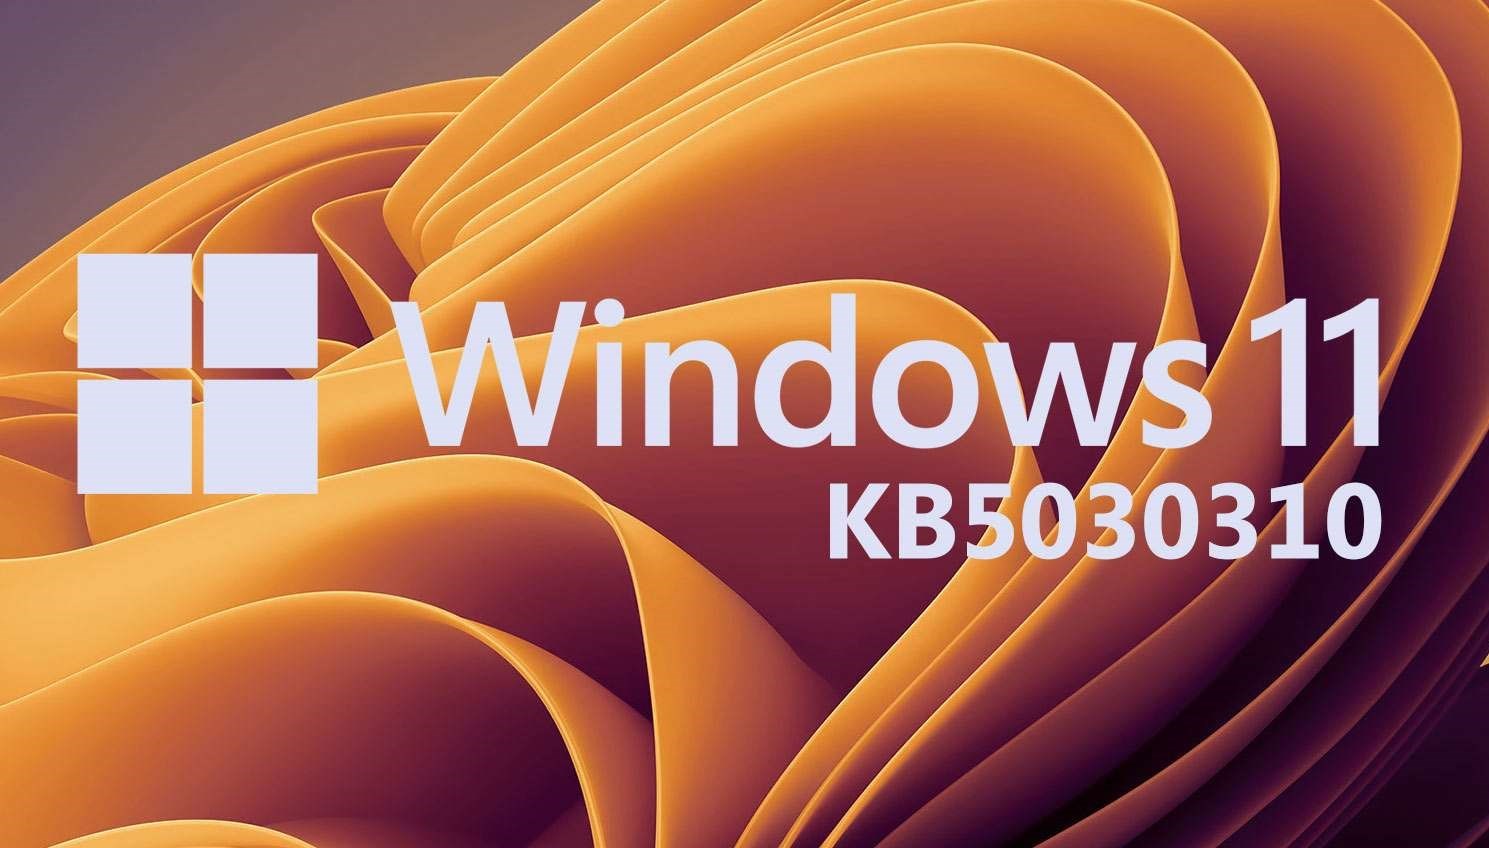 Simdiye Kadarki En Onemli Windows 11 Guncellemesi Cikti169197 0